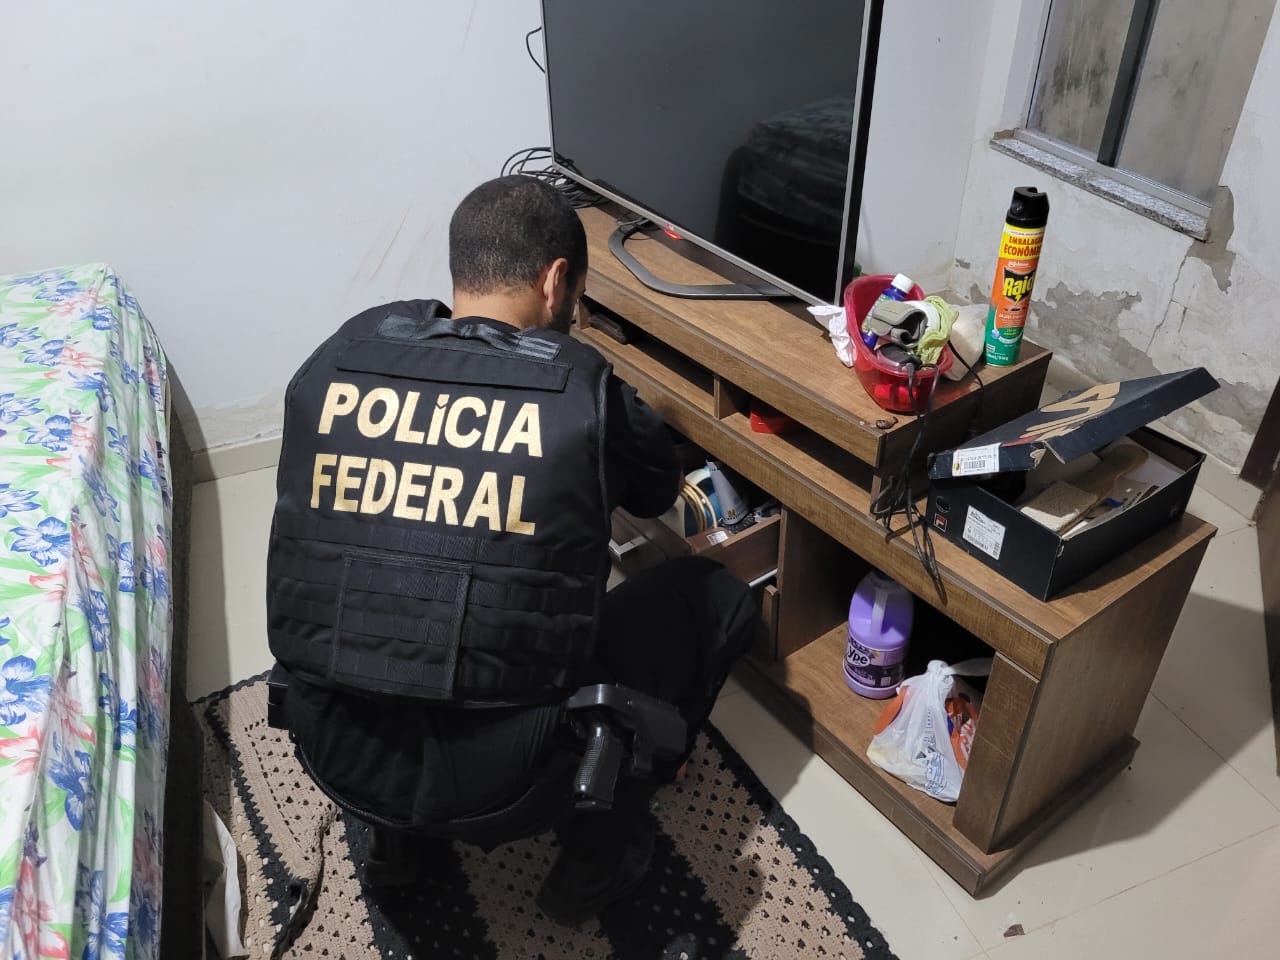 10 de Agosto: Polícia Federal realiza operação na cidade de Imperatriz, no Maranhão